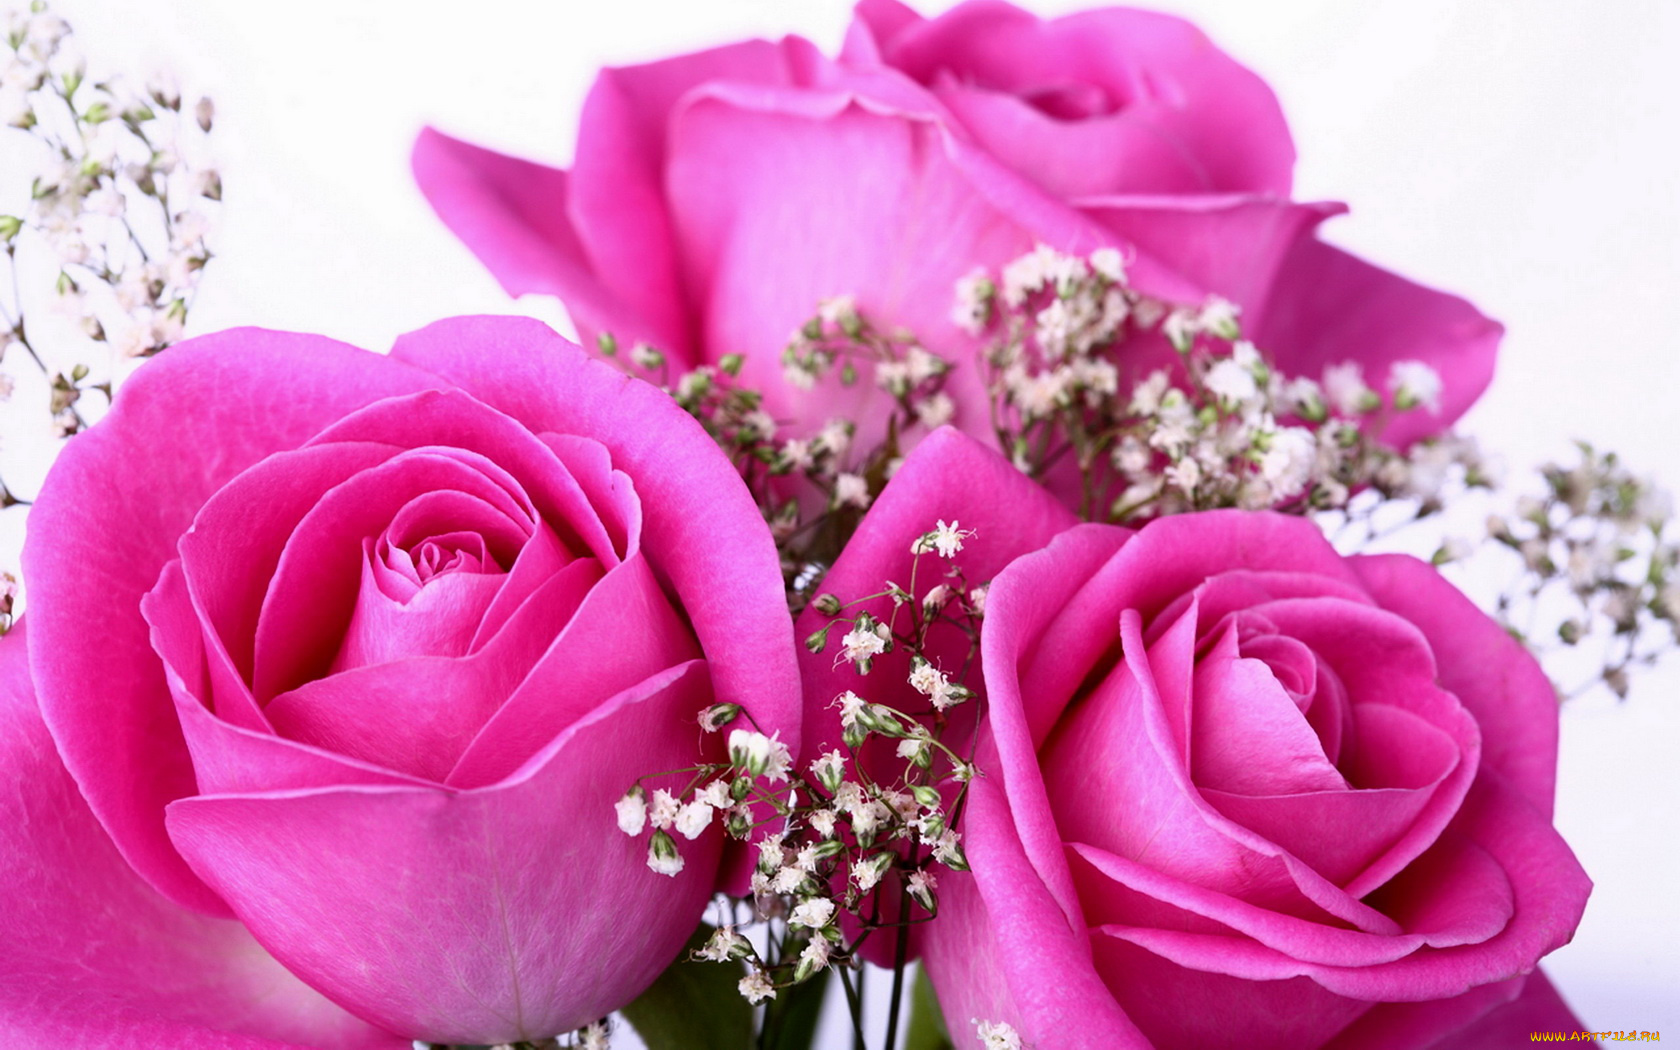 cvety-rozy-rozovye-nezhnye-587033.jpg